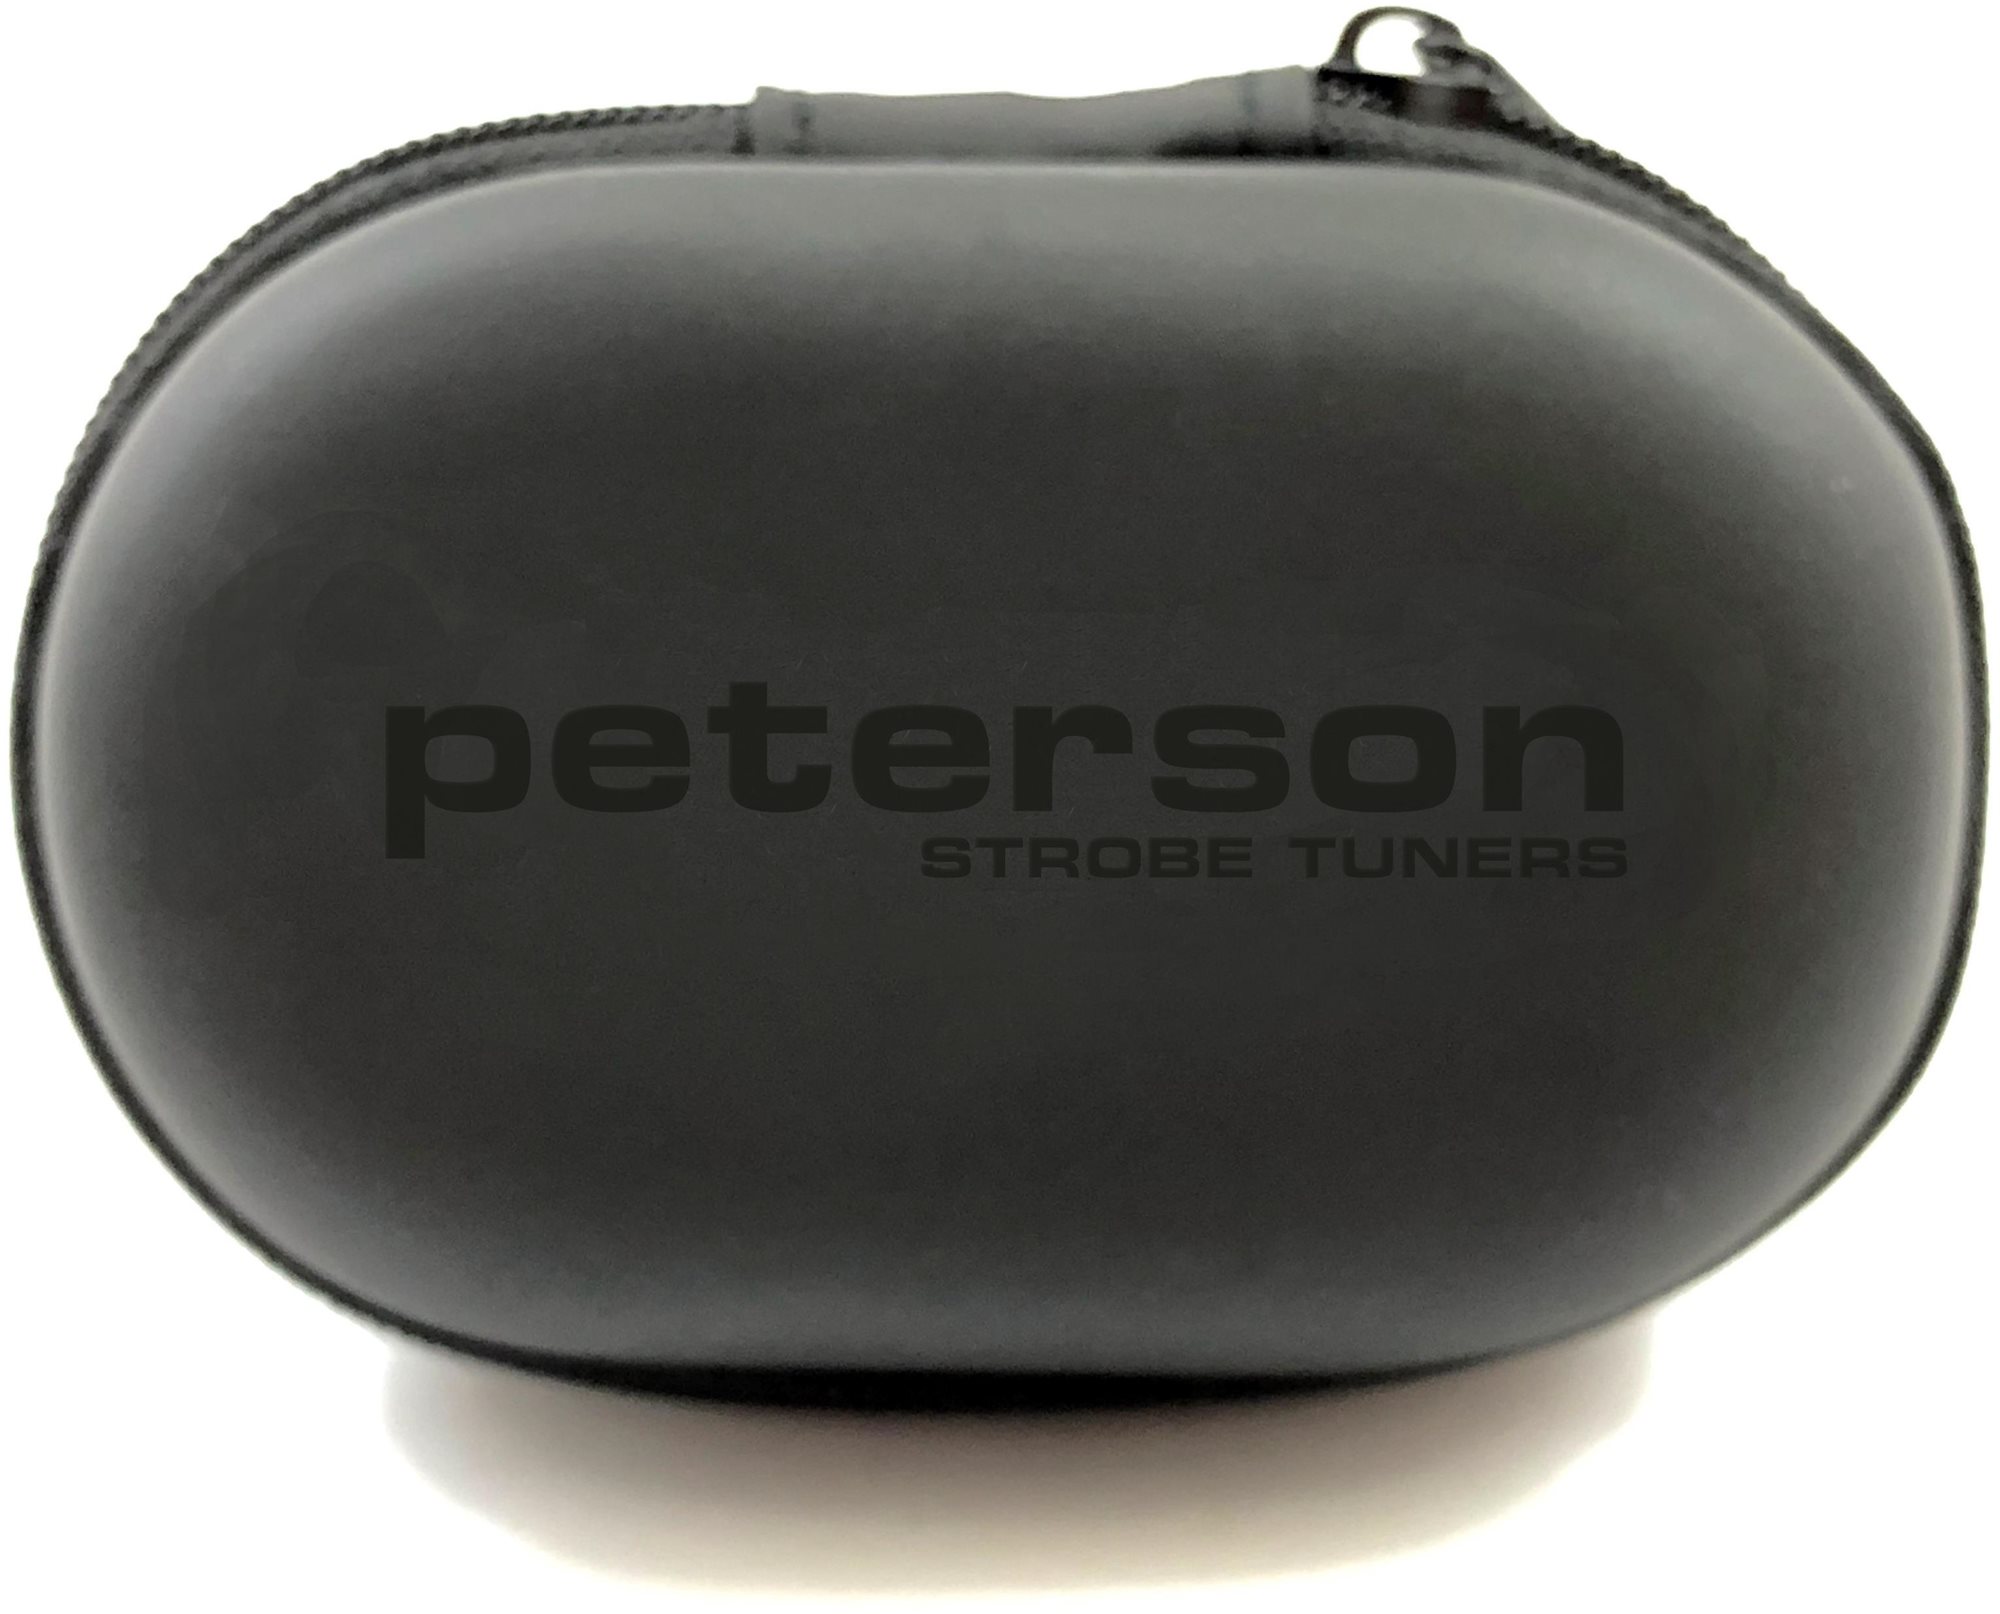 PETERSON StroboClip HD Case